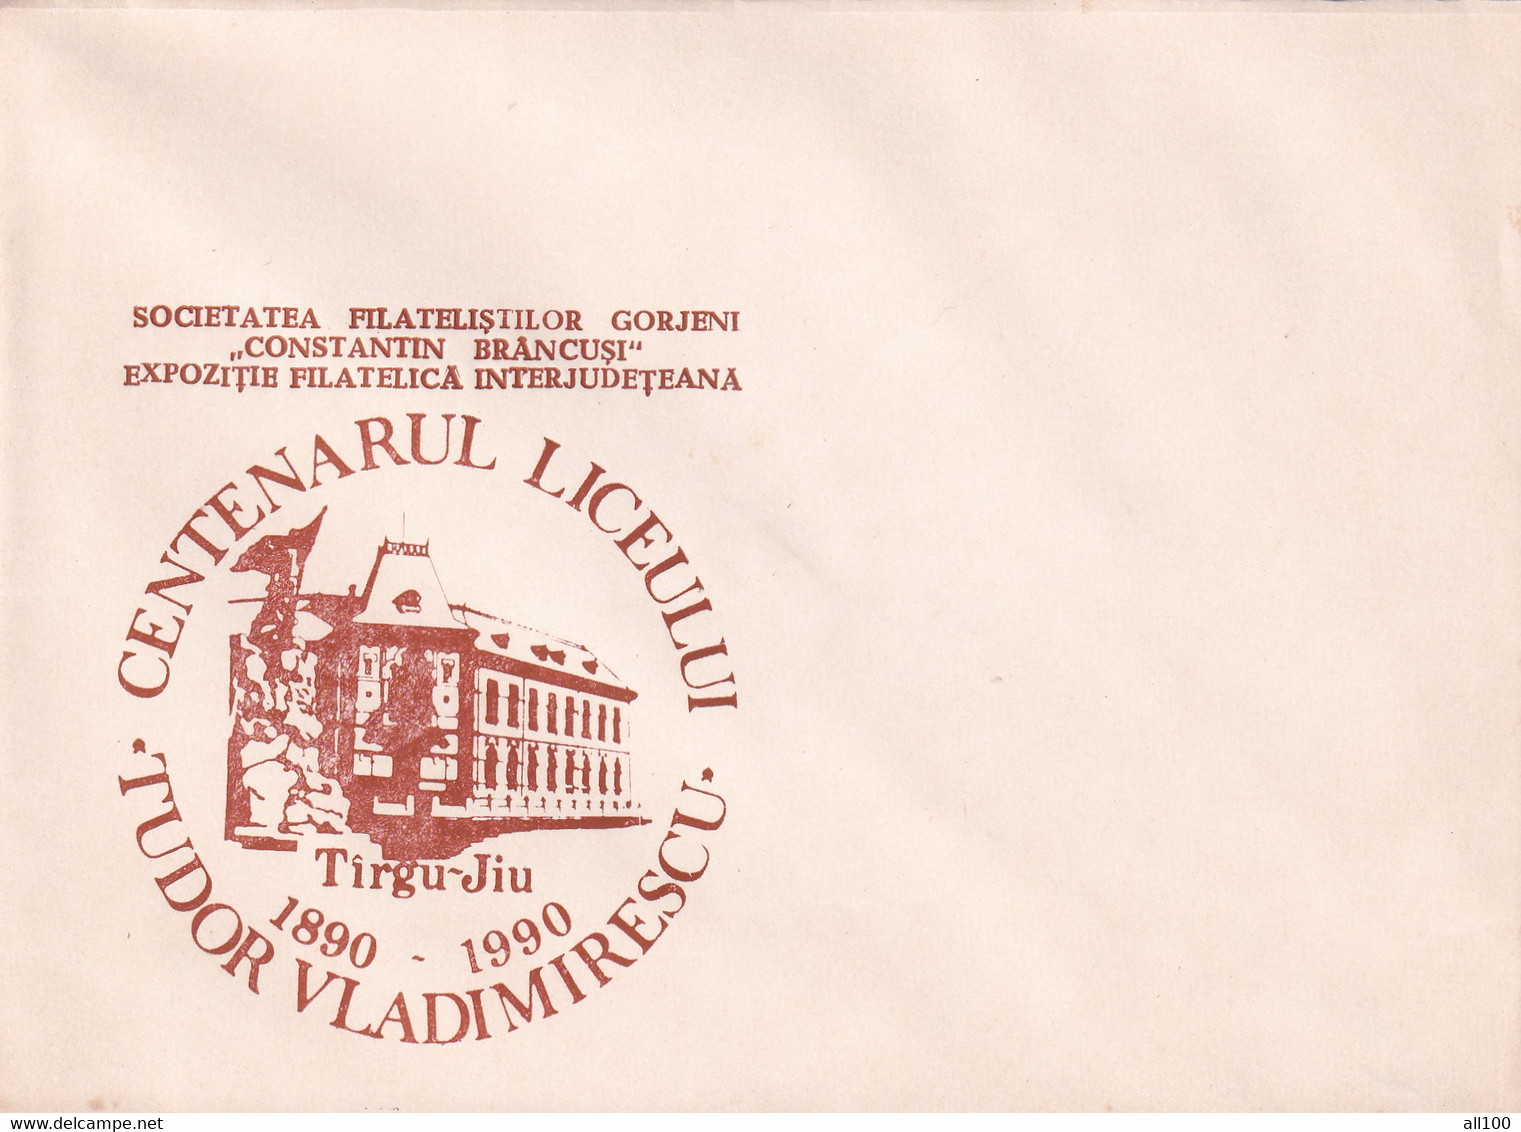 A19349 - CENTENARUL LICEULUI TUDOR VLADIMIRESCU TARGU JIU TIRGU-JIU COVER ENVELOPE UNUSED 1990 ROMANIA - Cartas & Documentos